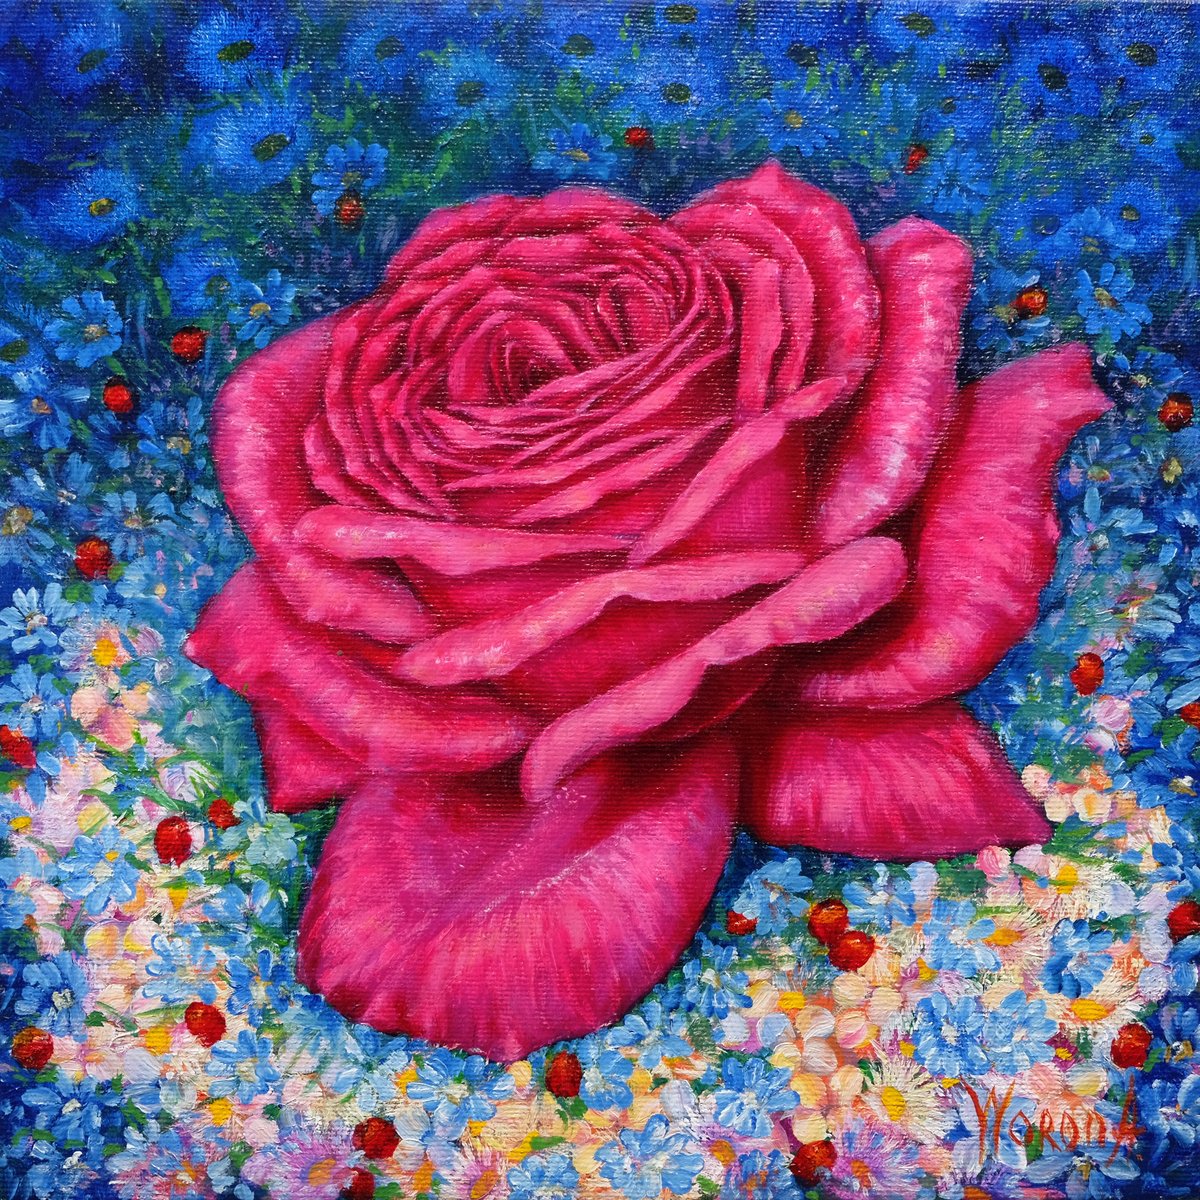 Rose. Pink Rose by Anastasia Woron